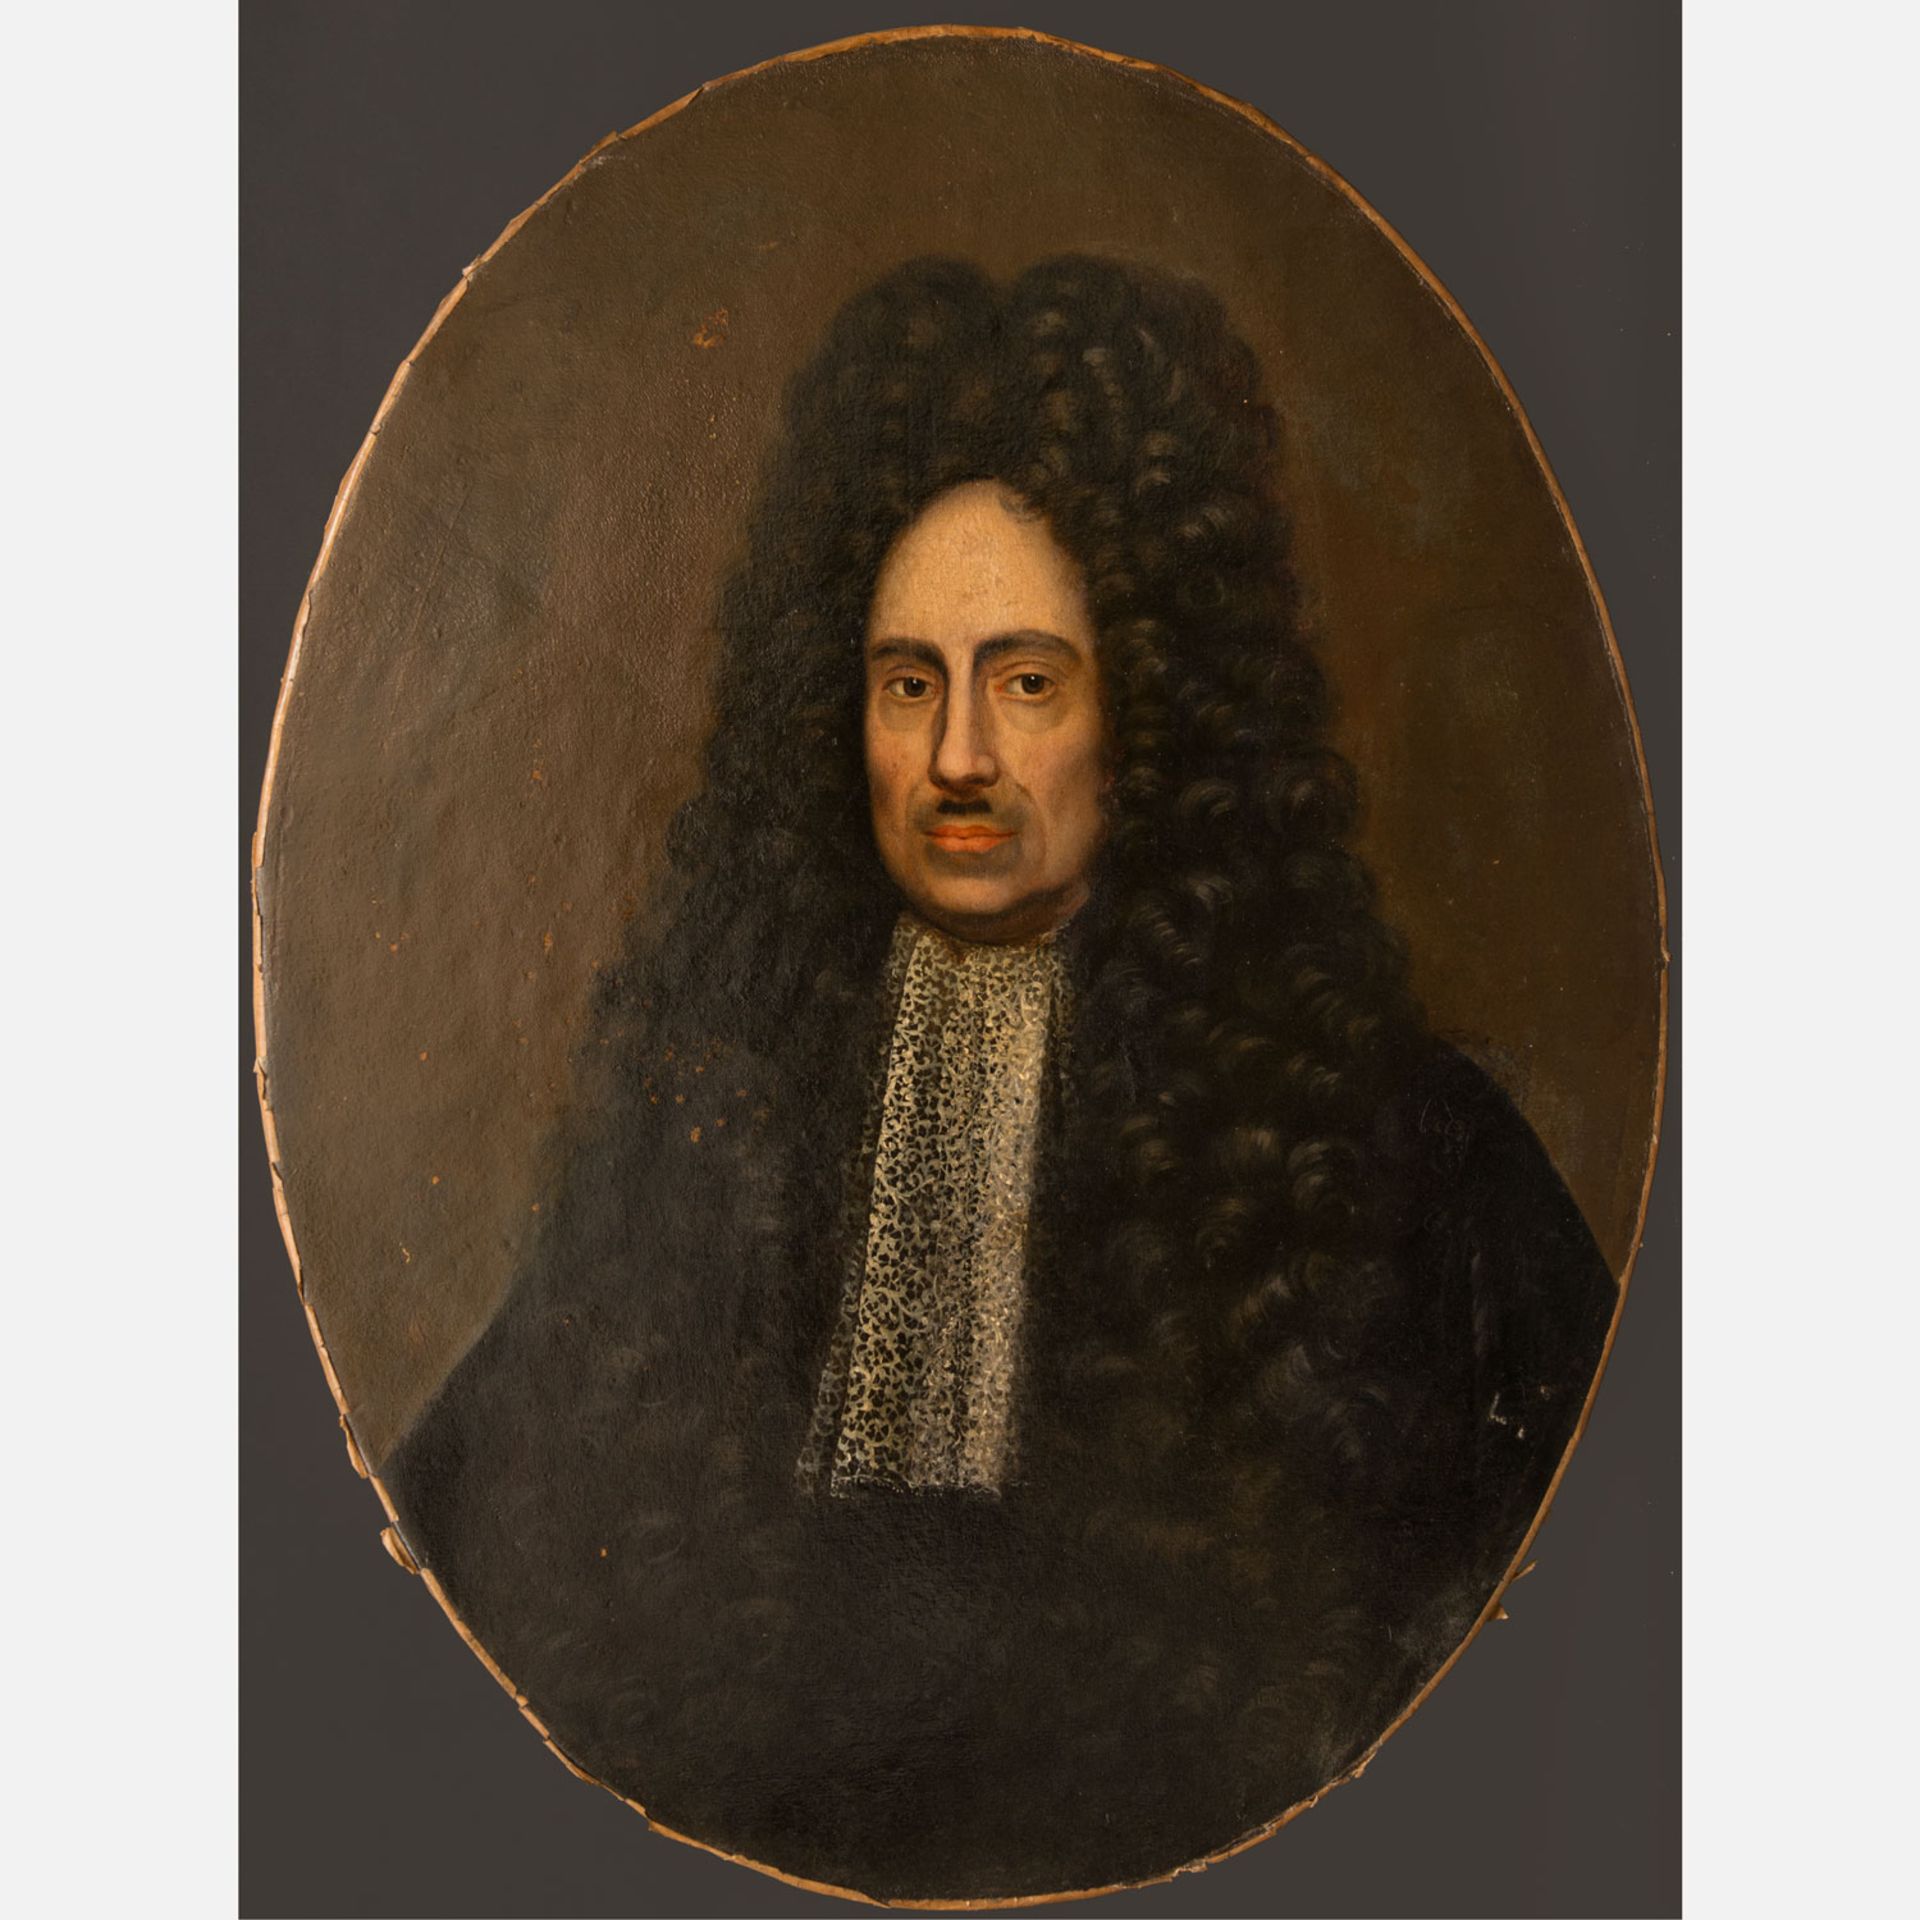 Jacob van Schuppen (1670 – 1751) – Attributed